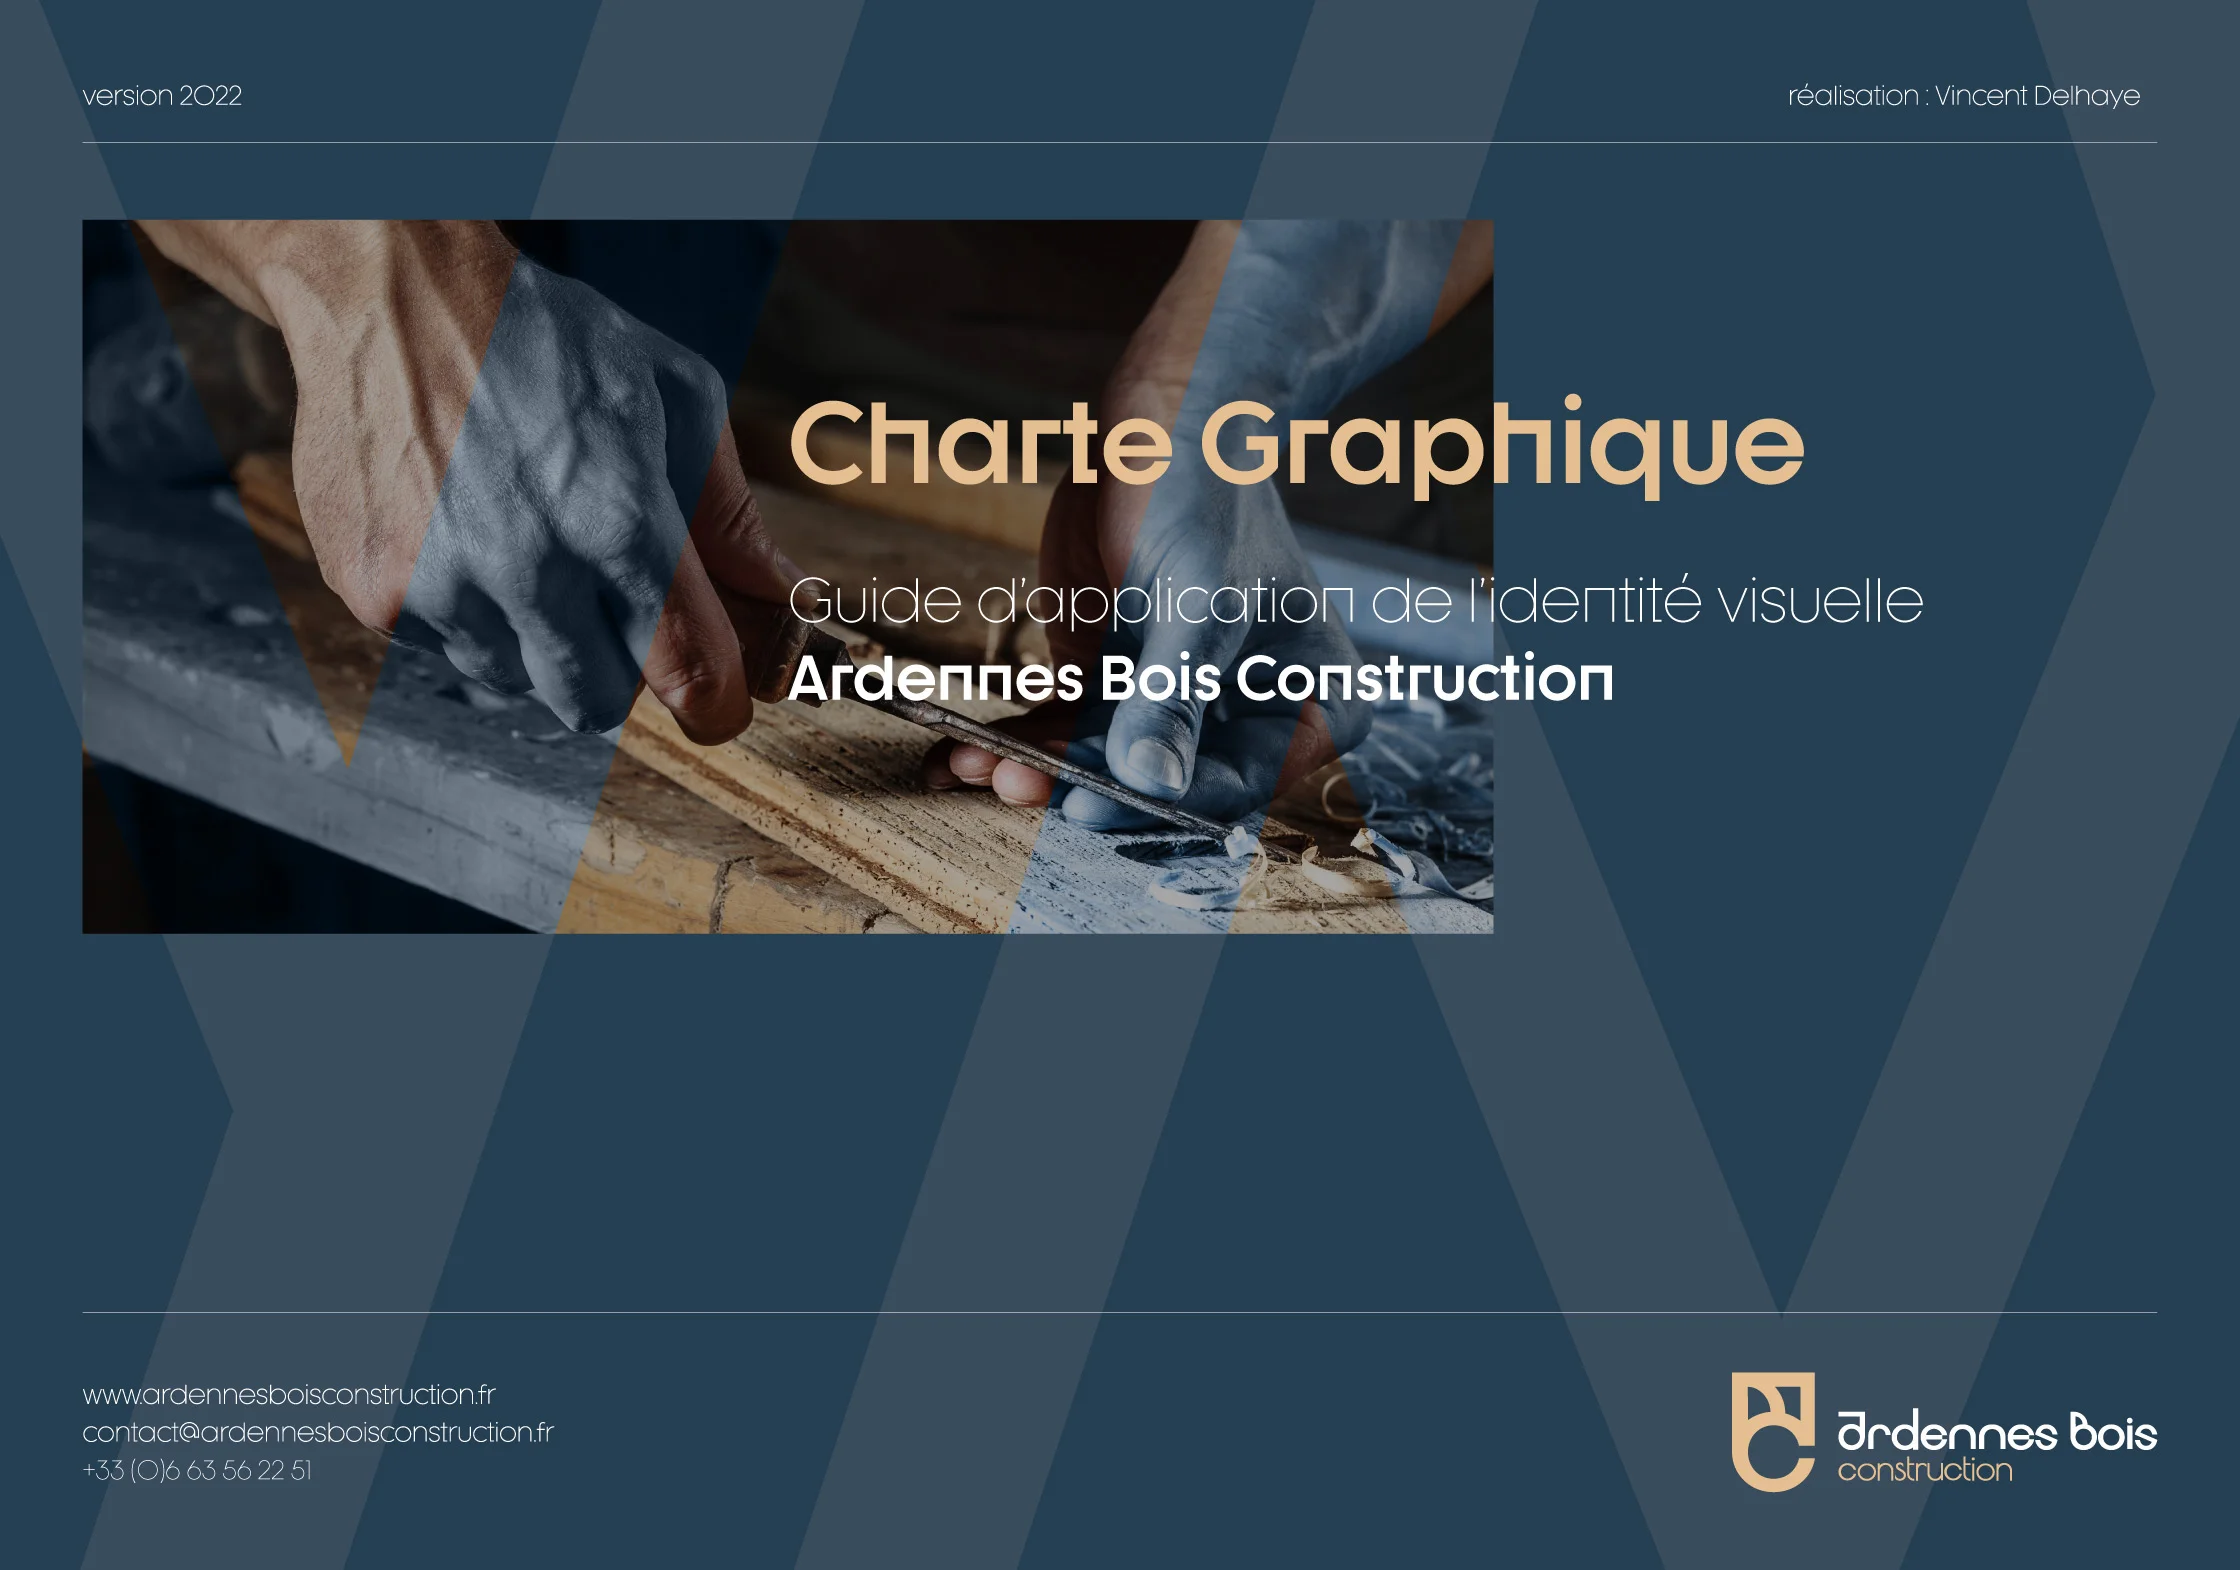 Charte Graphique Ardennes Bois Construction